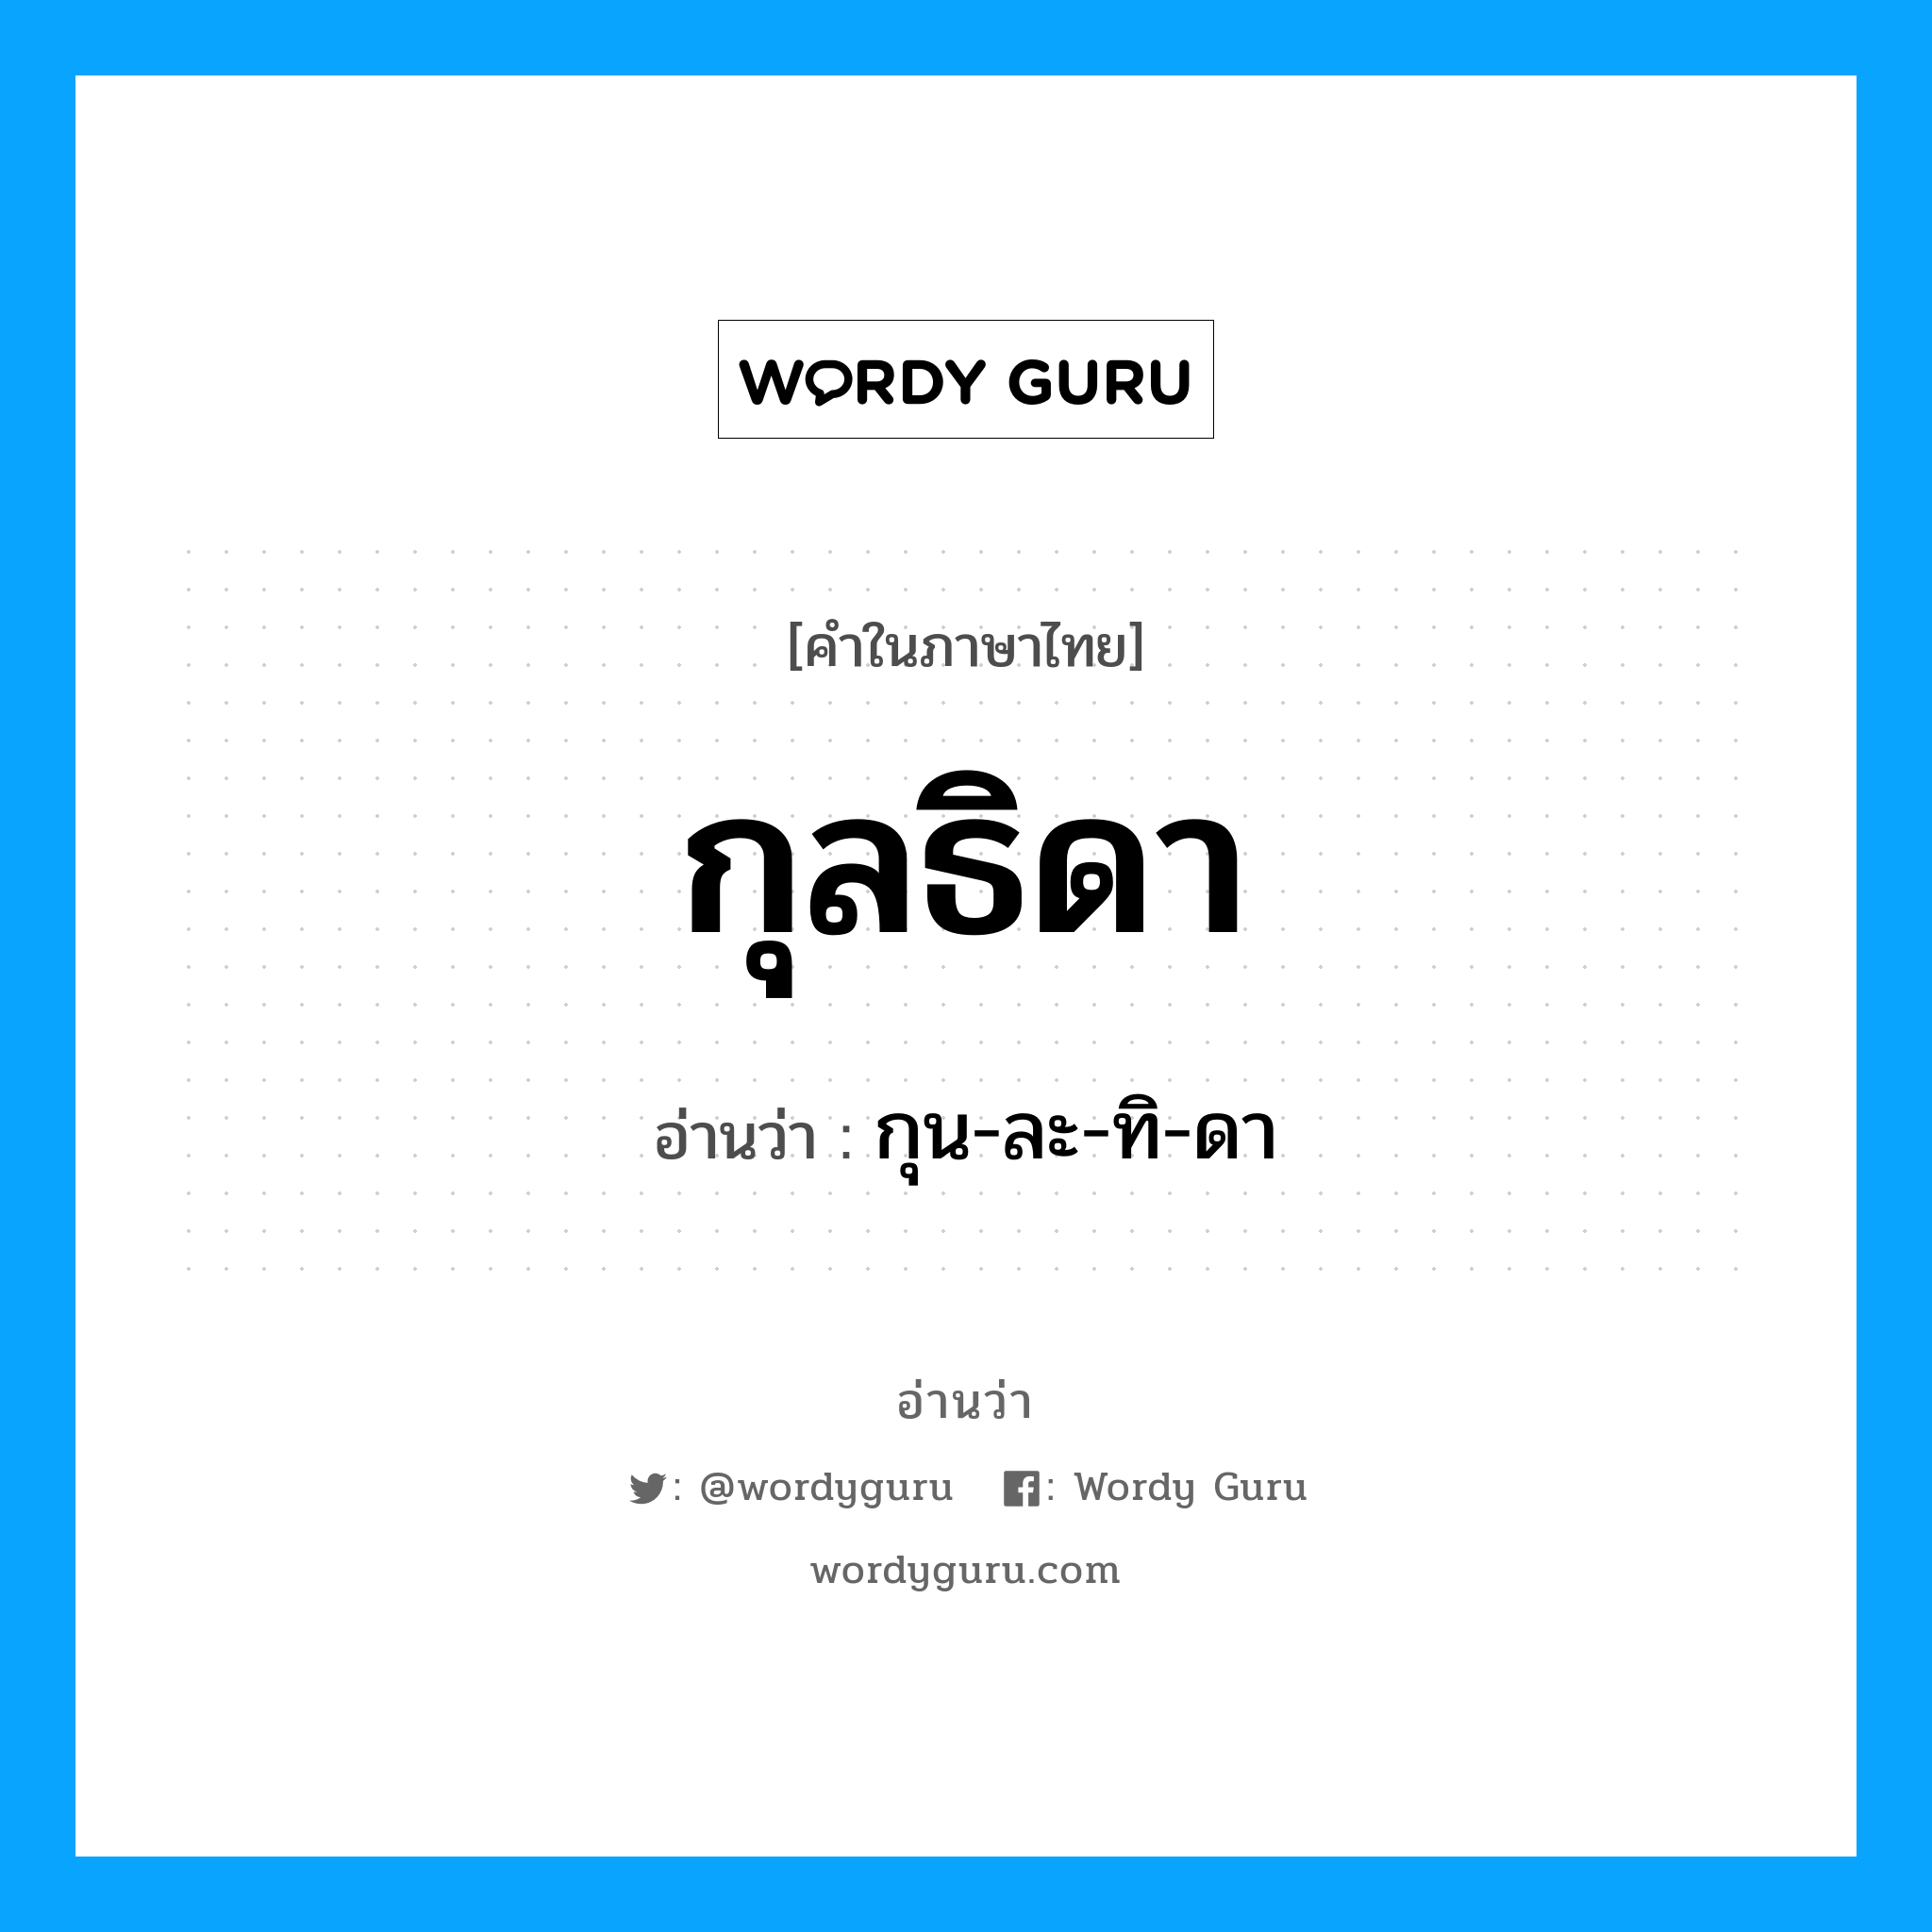 กุน-ละ-ทิ-ดา เป็นคำอ่านของคำไหน?, คำในภาษาไทย กุน-ละ-ทิ-ดา อ่านว่า กุลธิดา